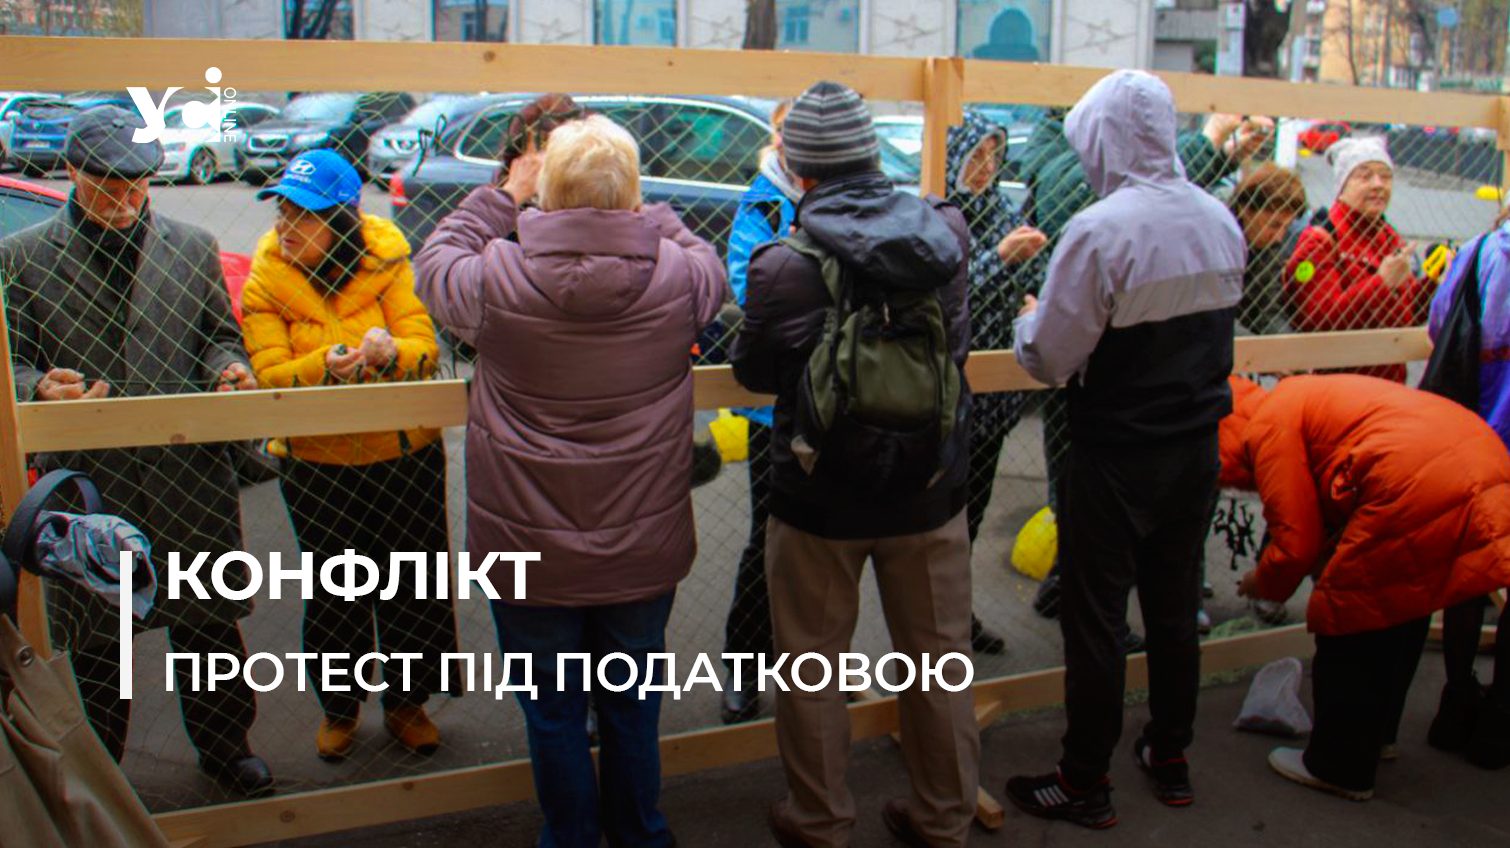 Одеські волонтери знову плели сітки під податковою службою (фото) «фото»